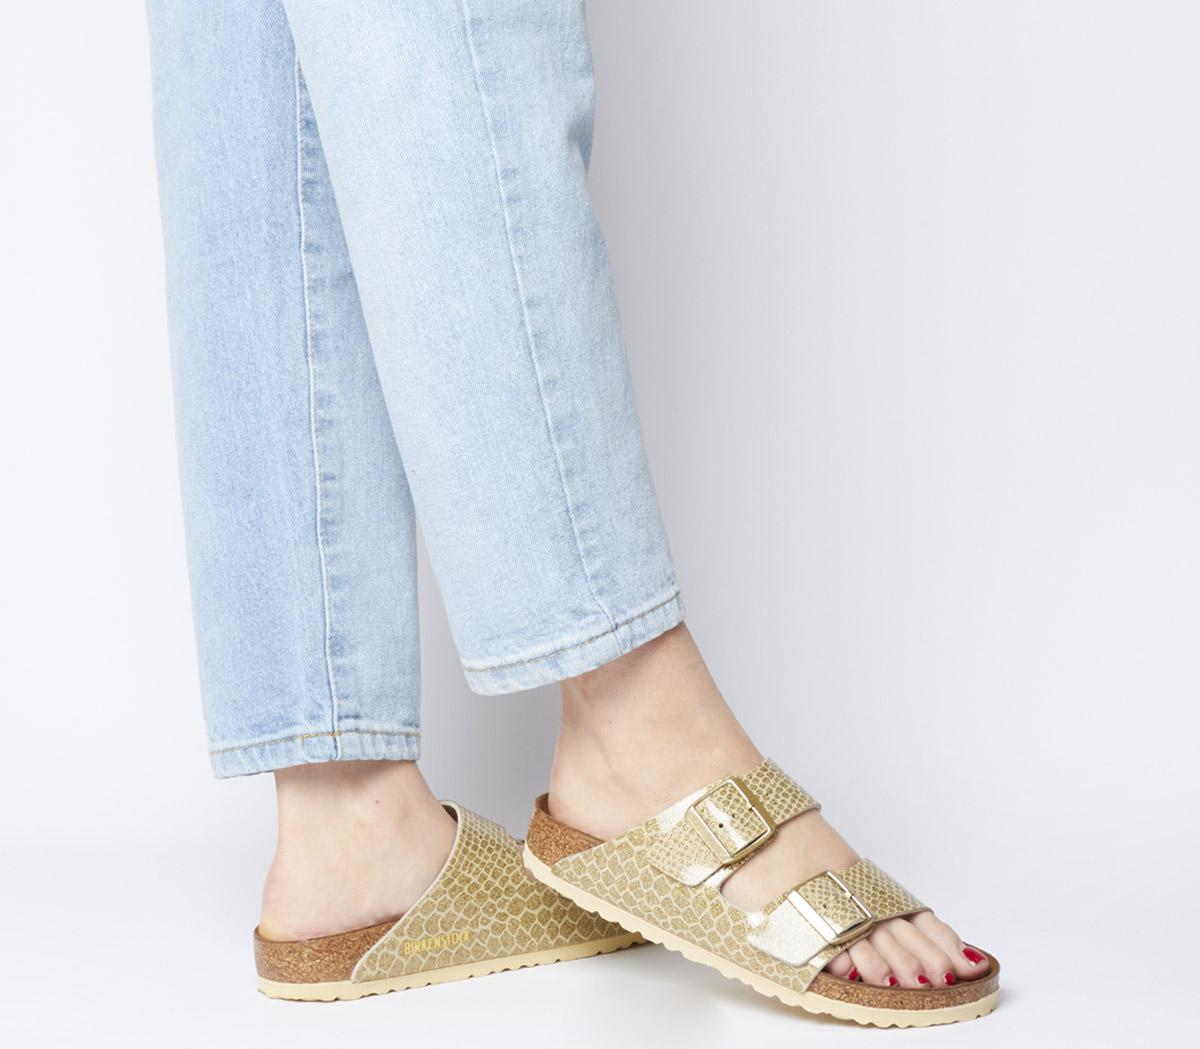 gold birkenstock sandals